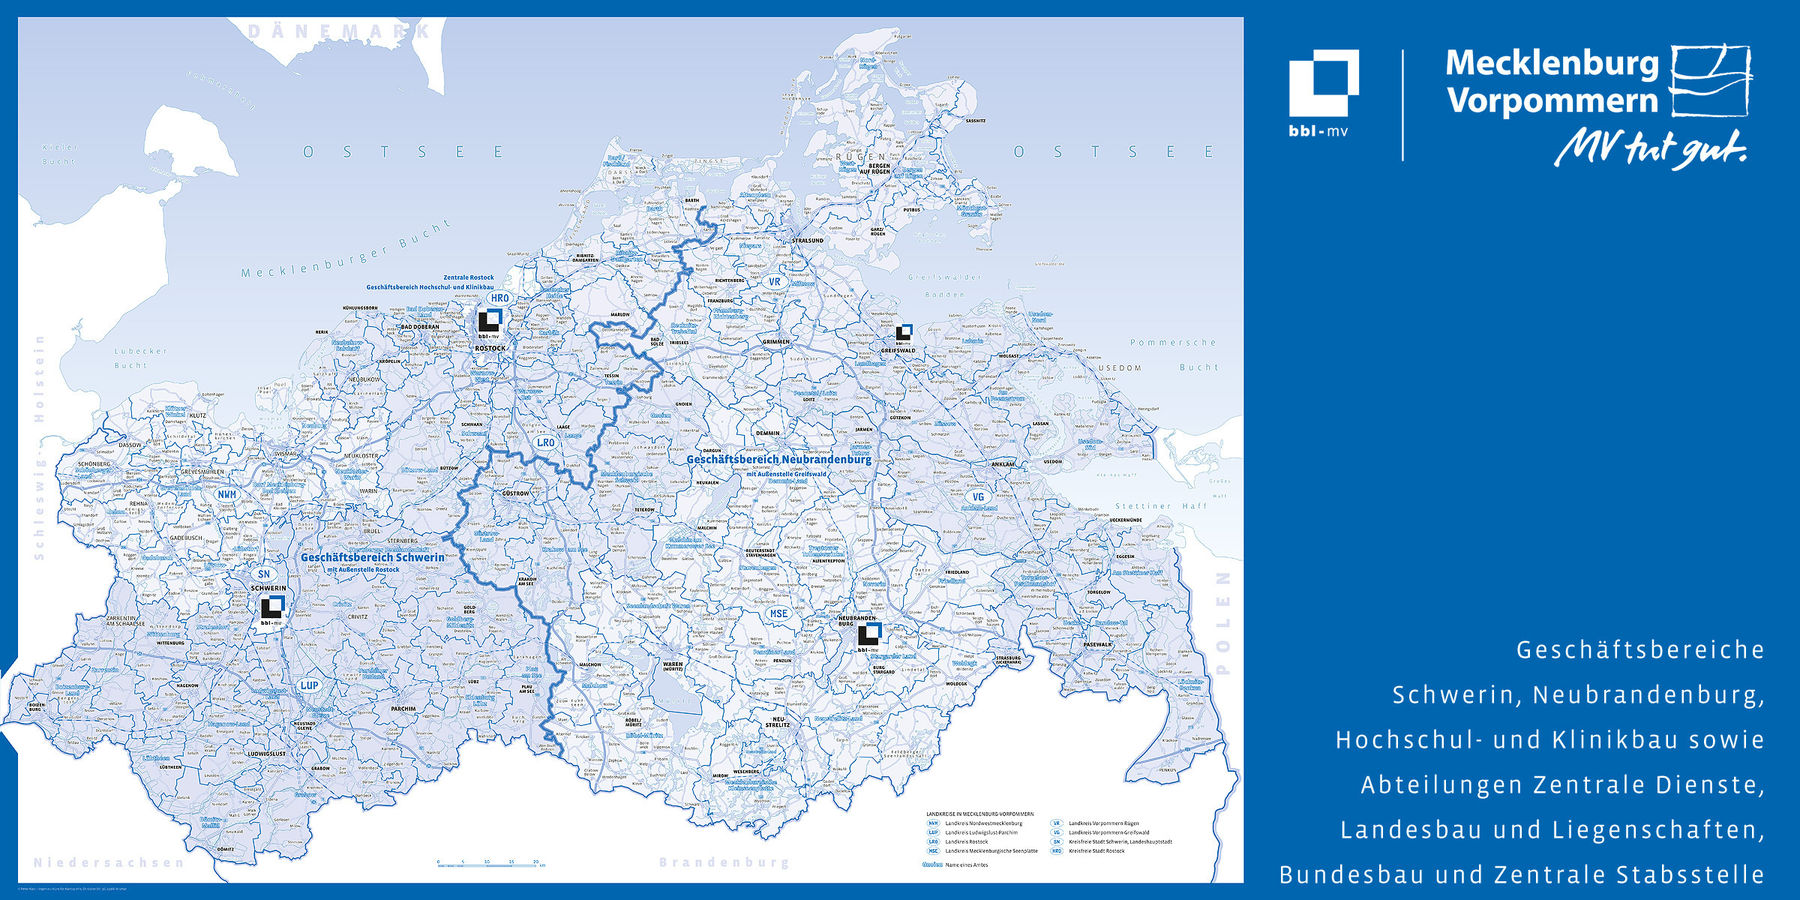 bbl-mv - Zuständigkeitskarte, Stand 24. Februar 2016 © 2014 Kartografie Kast, Schwerin